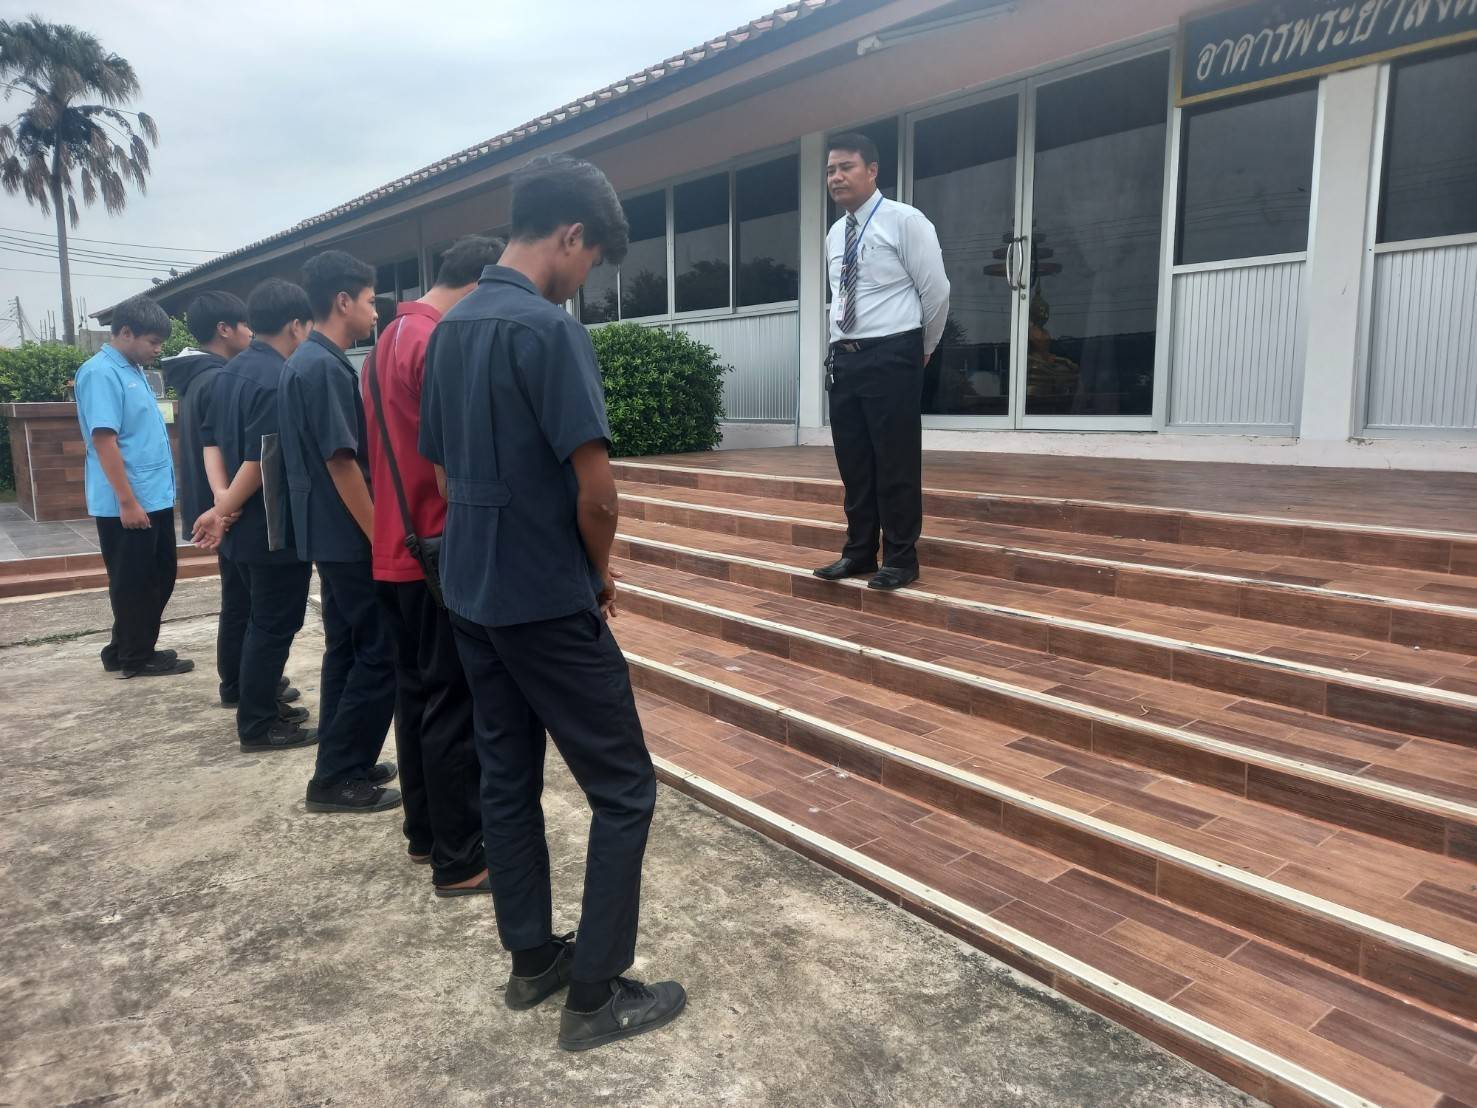 นายสุนทร โครพ รองผู้อำนวยการฝ่ายพัฒนากิจการนักเรียน นักศึกษา วิทยาลัยการอาชีพอินทร์บุรี และคุณครูเวรประจำวัน ดำเนินการปรับพฤติกรรมนักเรียนมาสาย วันที่ 23 มิถุนายน 2566